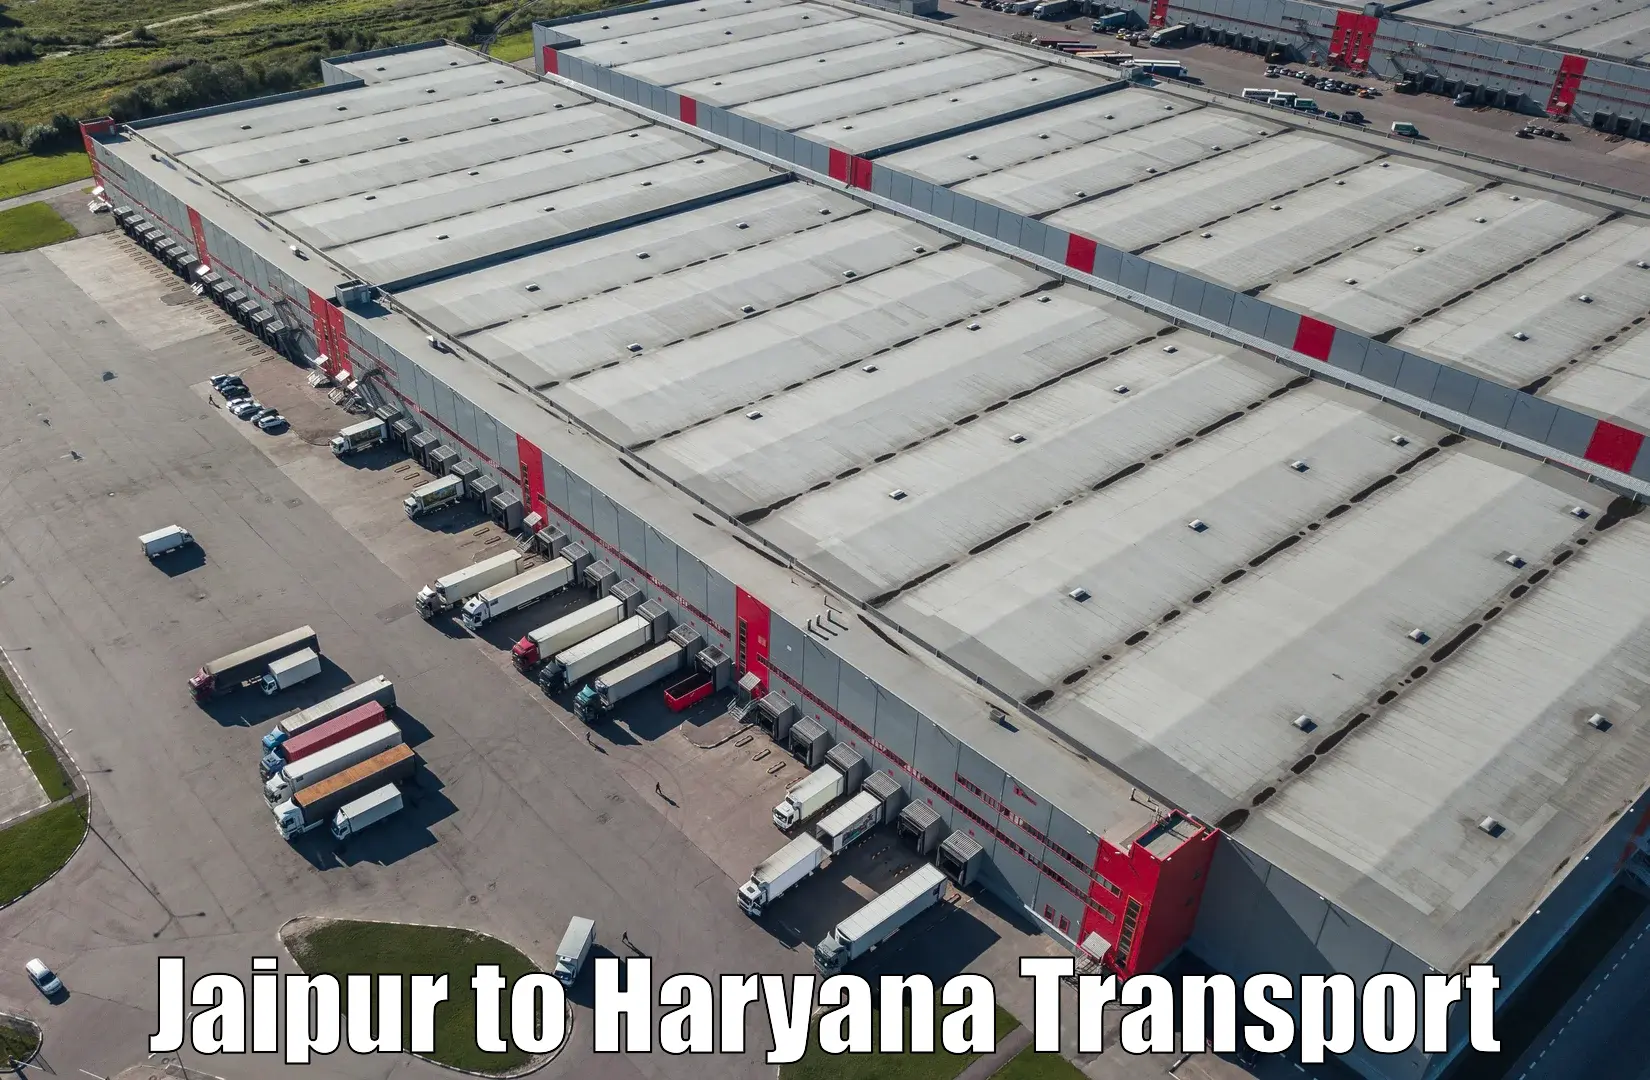 Furniture transport service Jaipur to Haryana